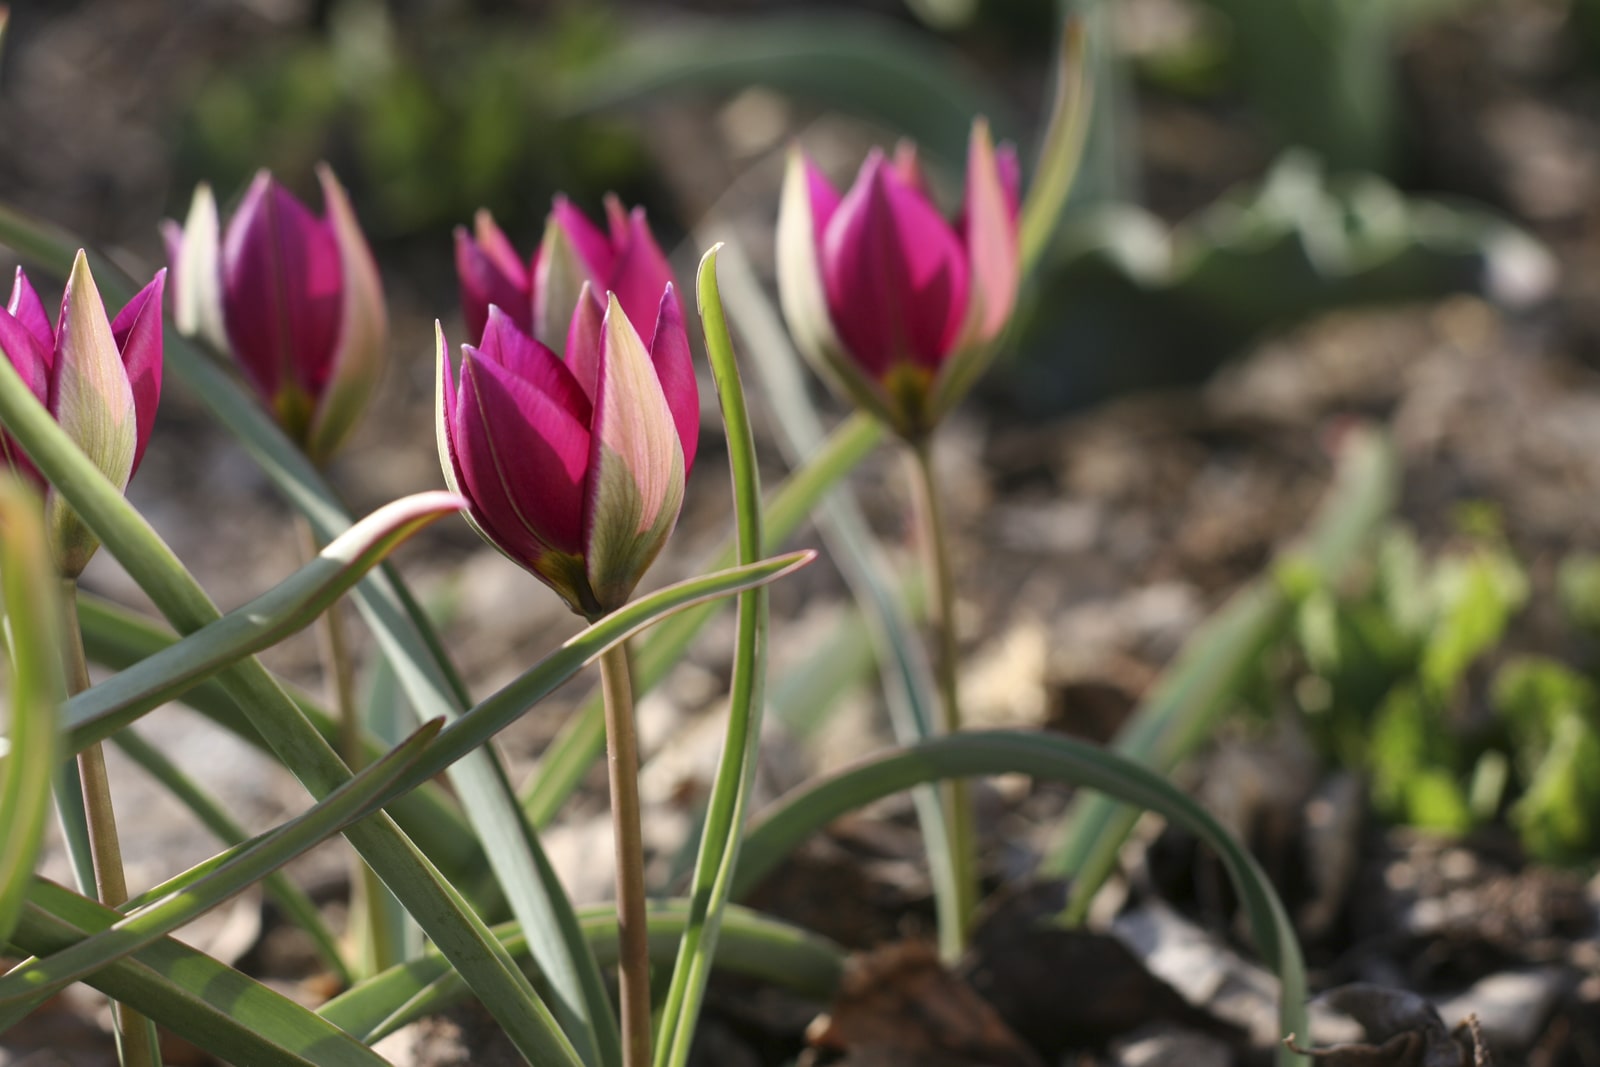 Ботанические тюльпаны сорта с фото и названиями и описанием